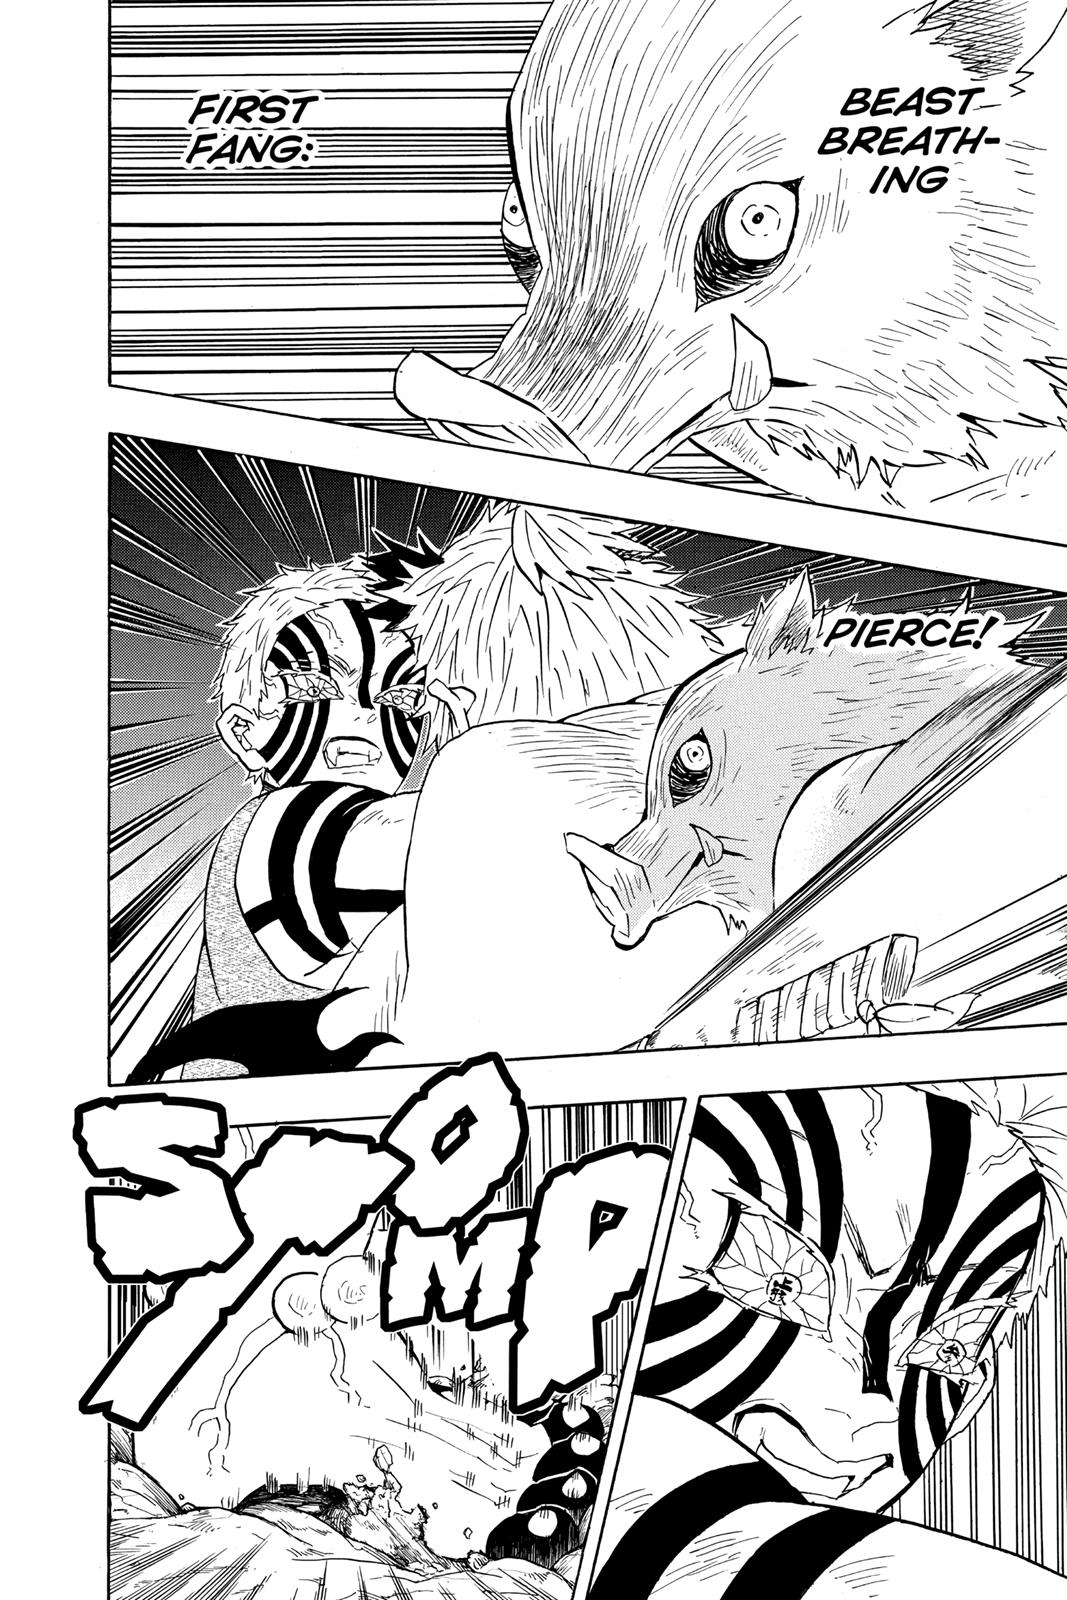 Demon Slayer Manga Manga Chapter - 65 - image 6